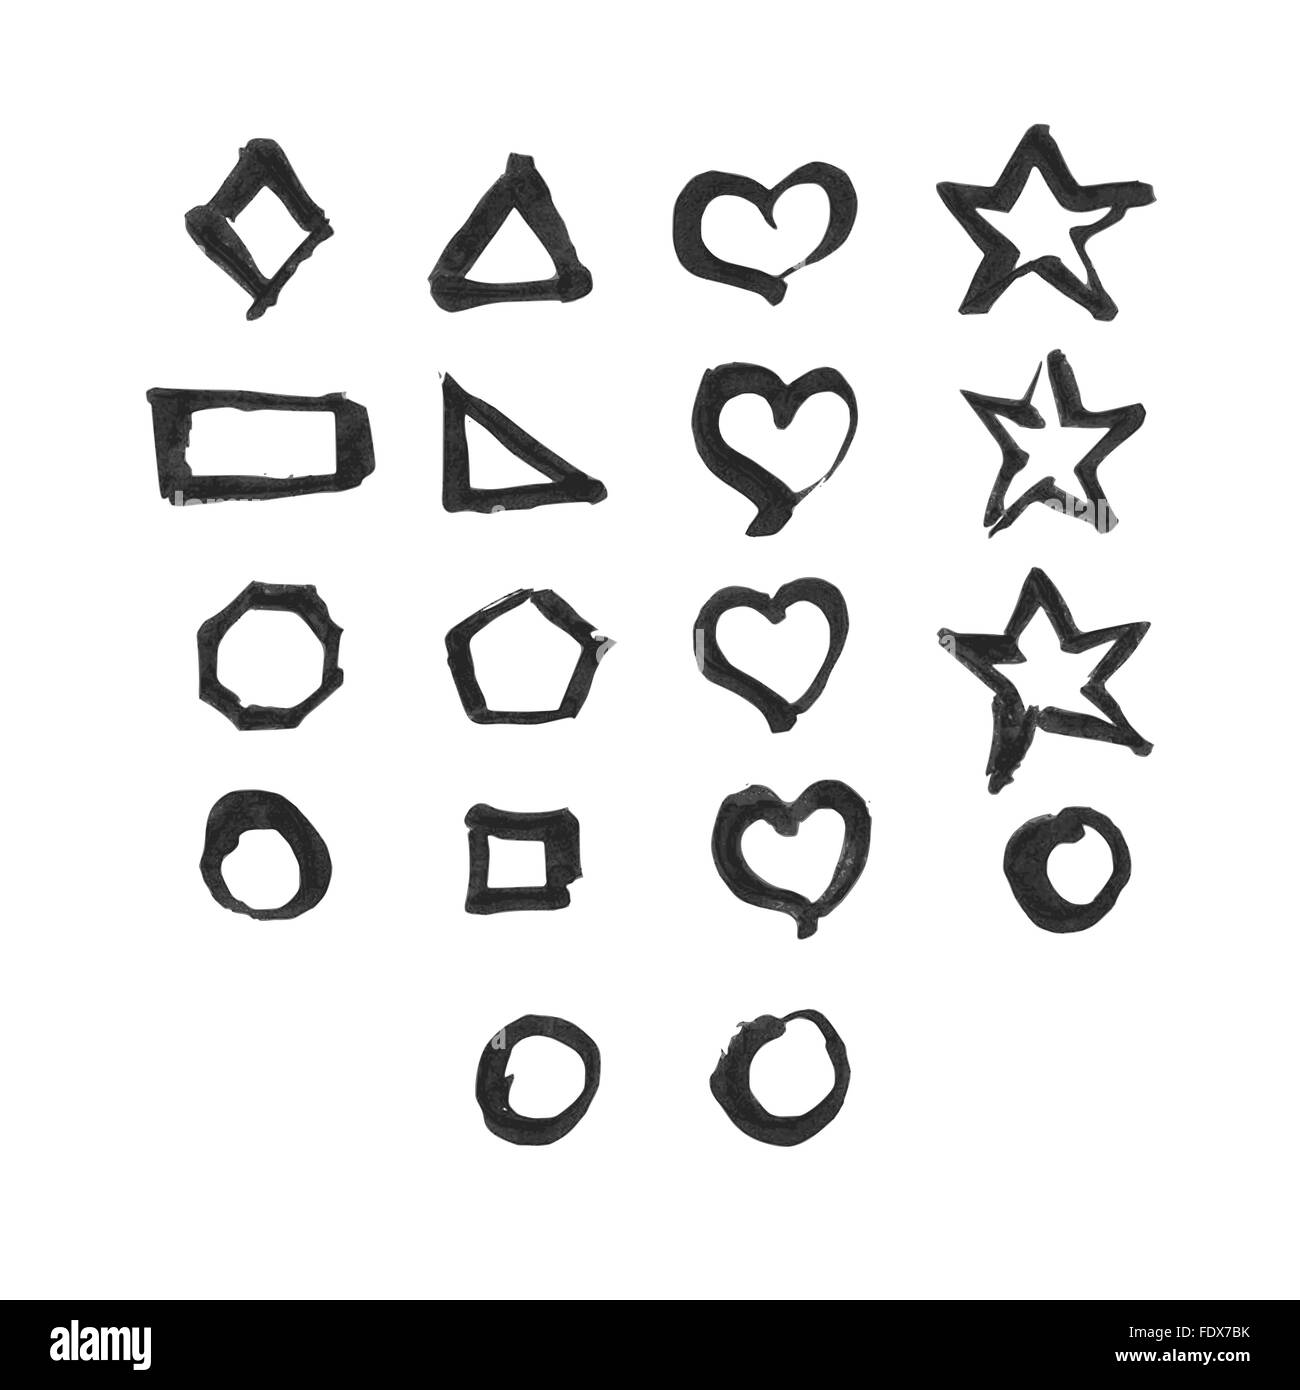 Formen legen. Es gibt 18 verschiedene Symbole. Design-Elemente wurden mit chinesischer Tusche und Kalligrafie Stift erstellt. Stock Vektor